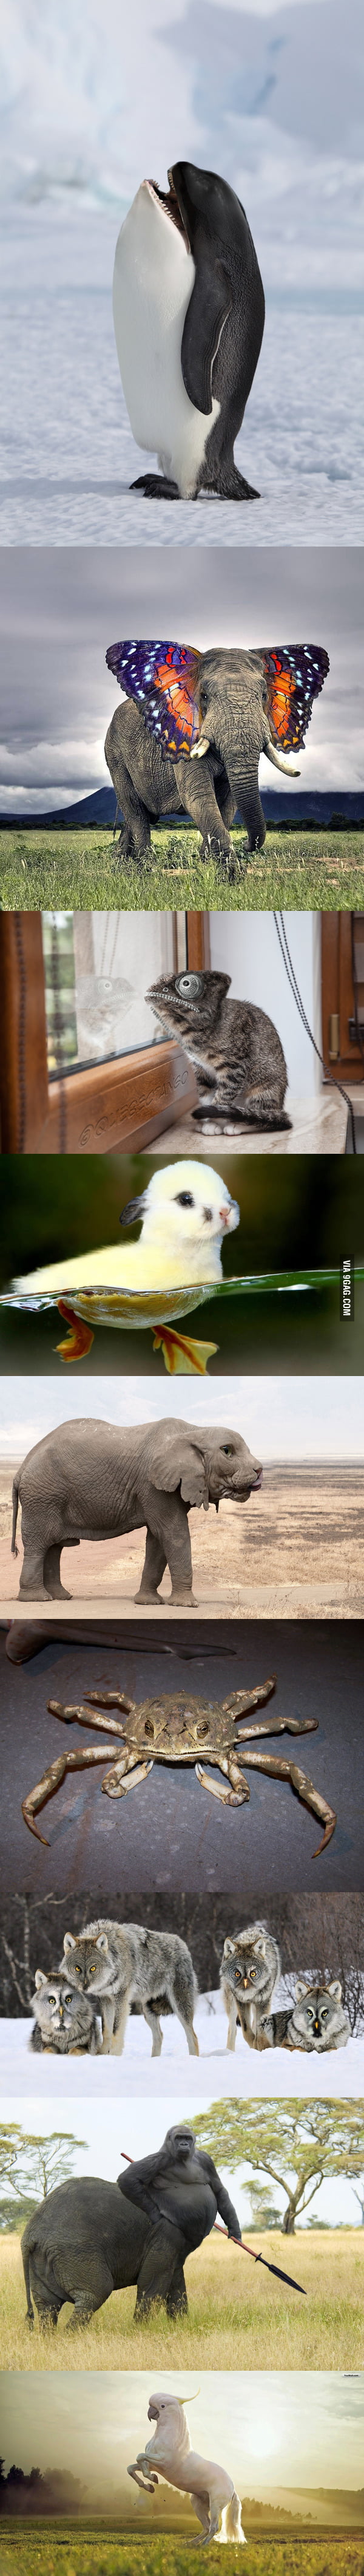 Majestic animal photoshopping